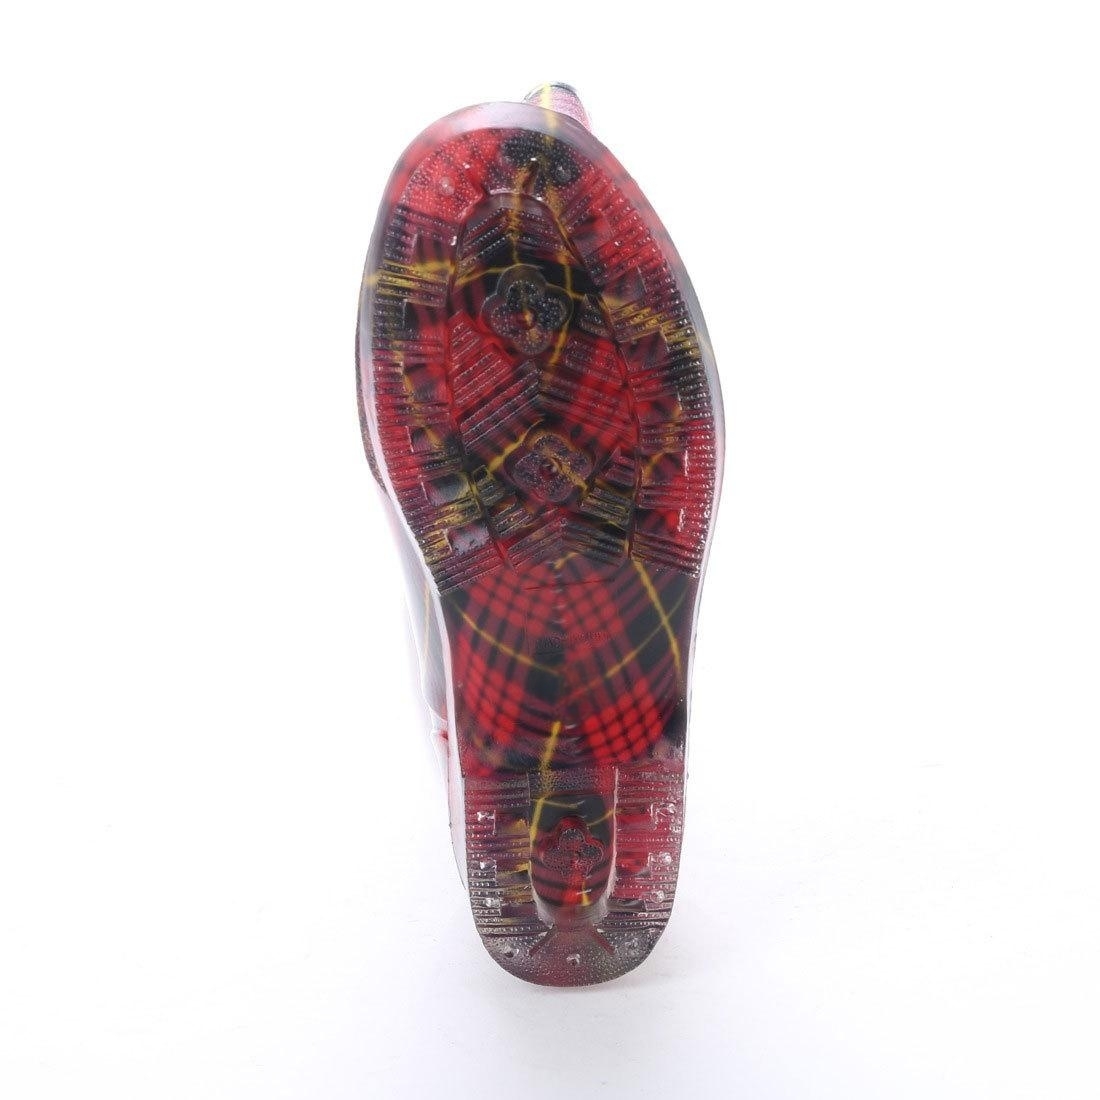 レディース レインブーツ レイン ブーツ ロング丈 一体成型 長靴 レッド チェック 柄 15032-red-chk-M ( 23.0 - 23.5cm )